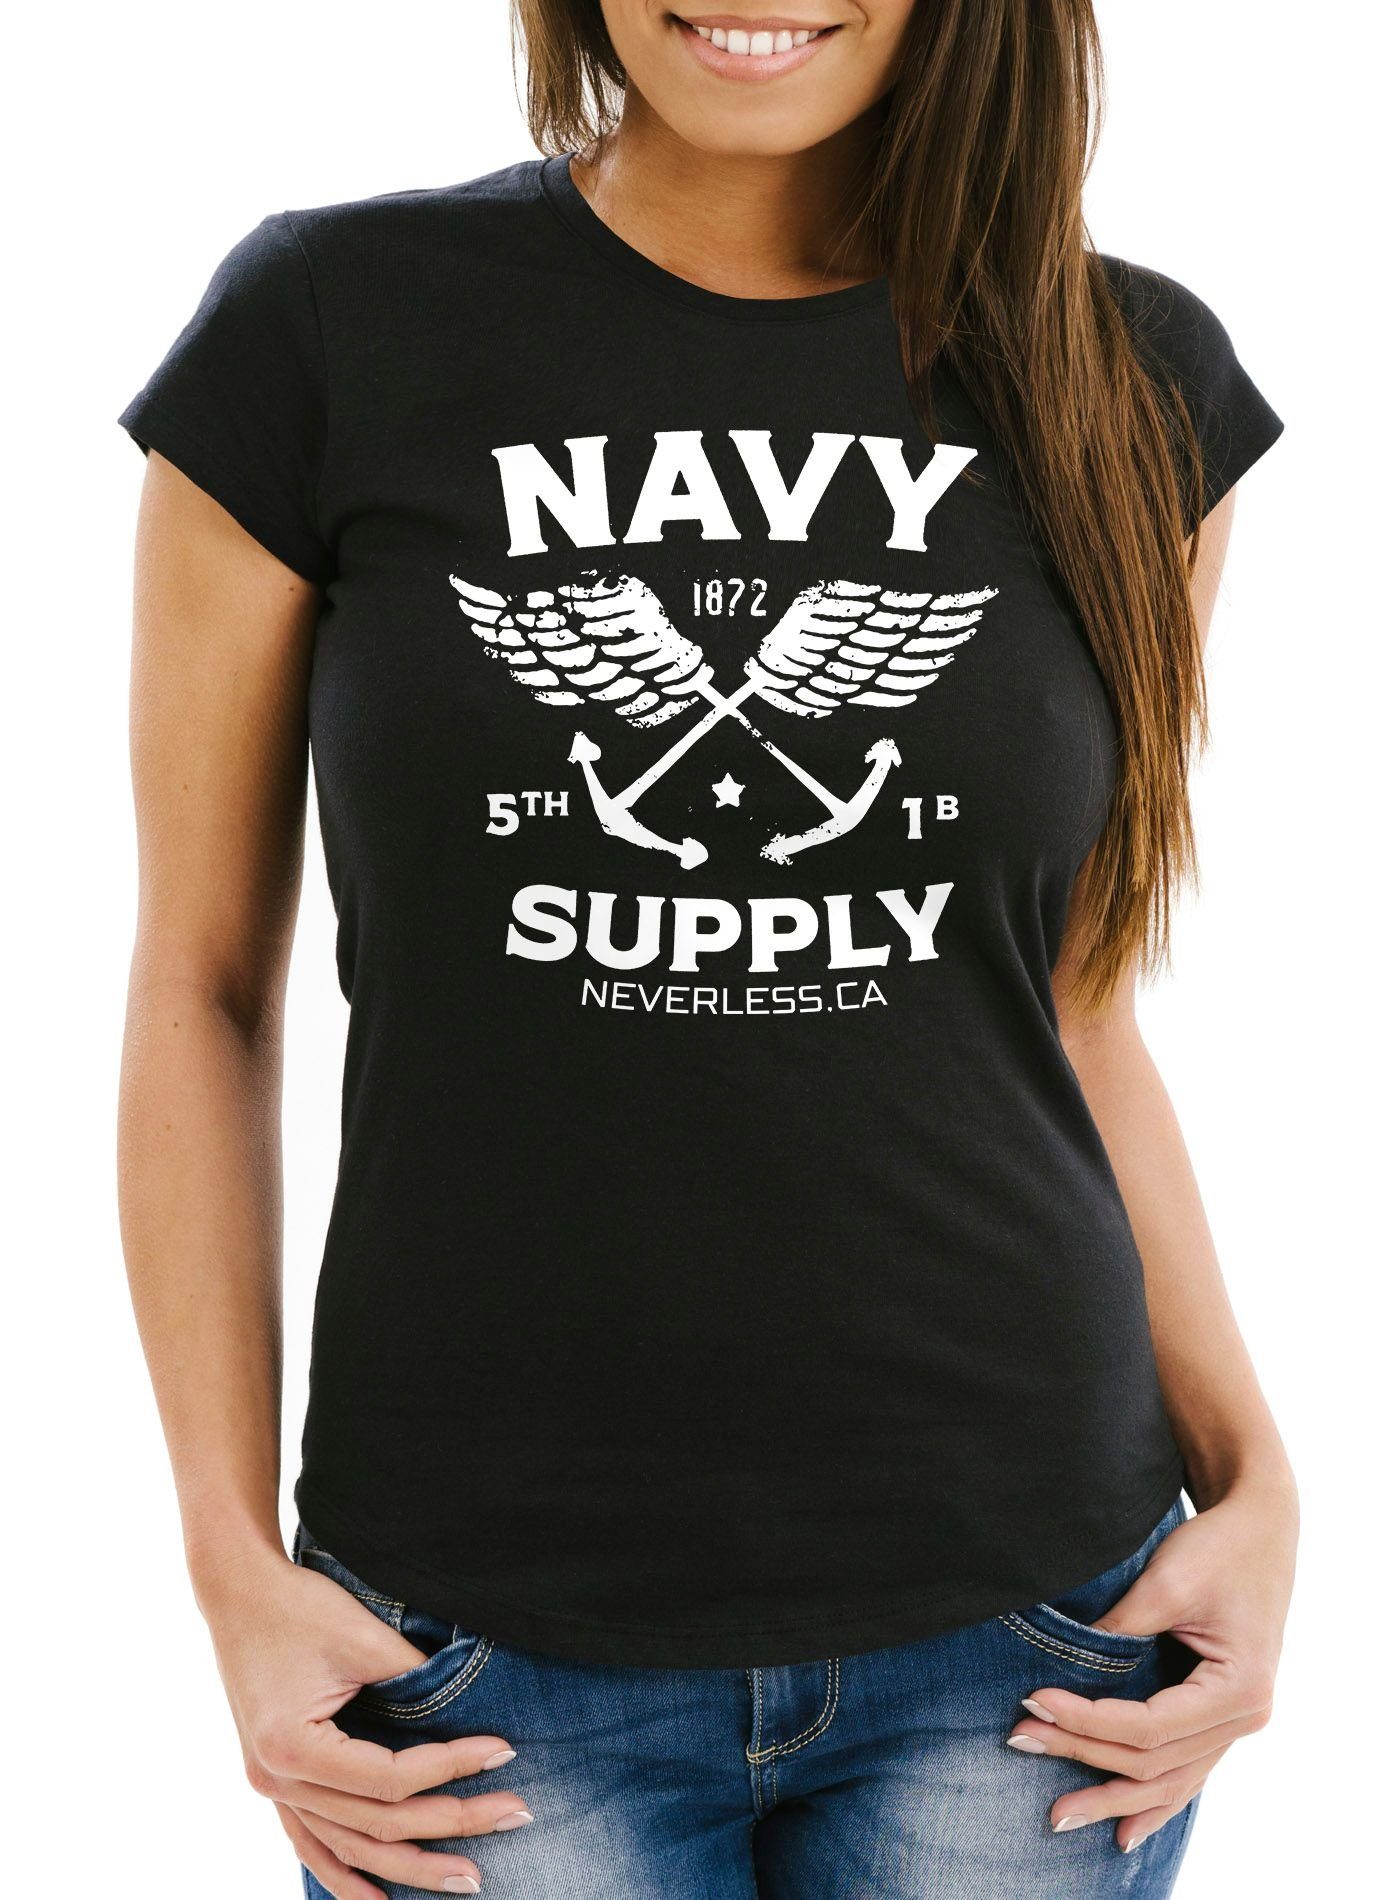 Damen Shirts Neverless Print-Shirt Cooles Damen T-Shirt Nautical Maritim Anker Flügeln Navy Supply Vintage Neverless® mit Print